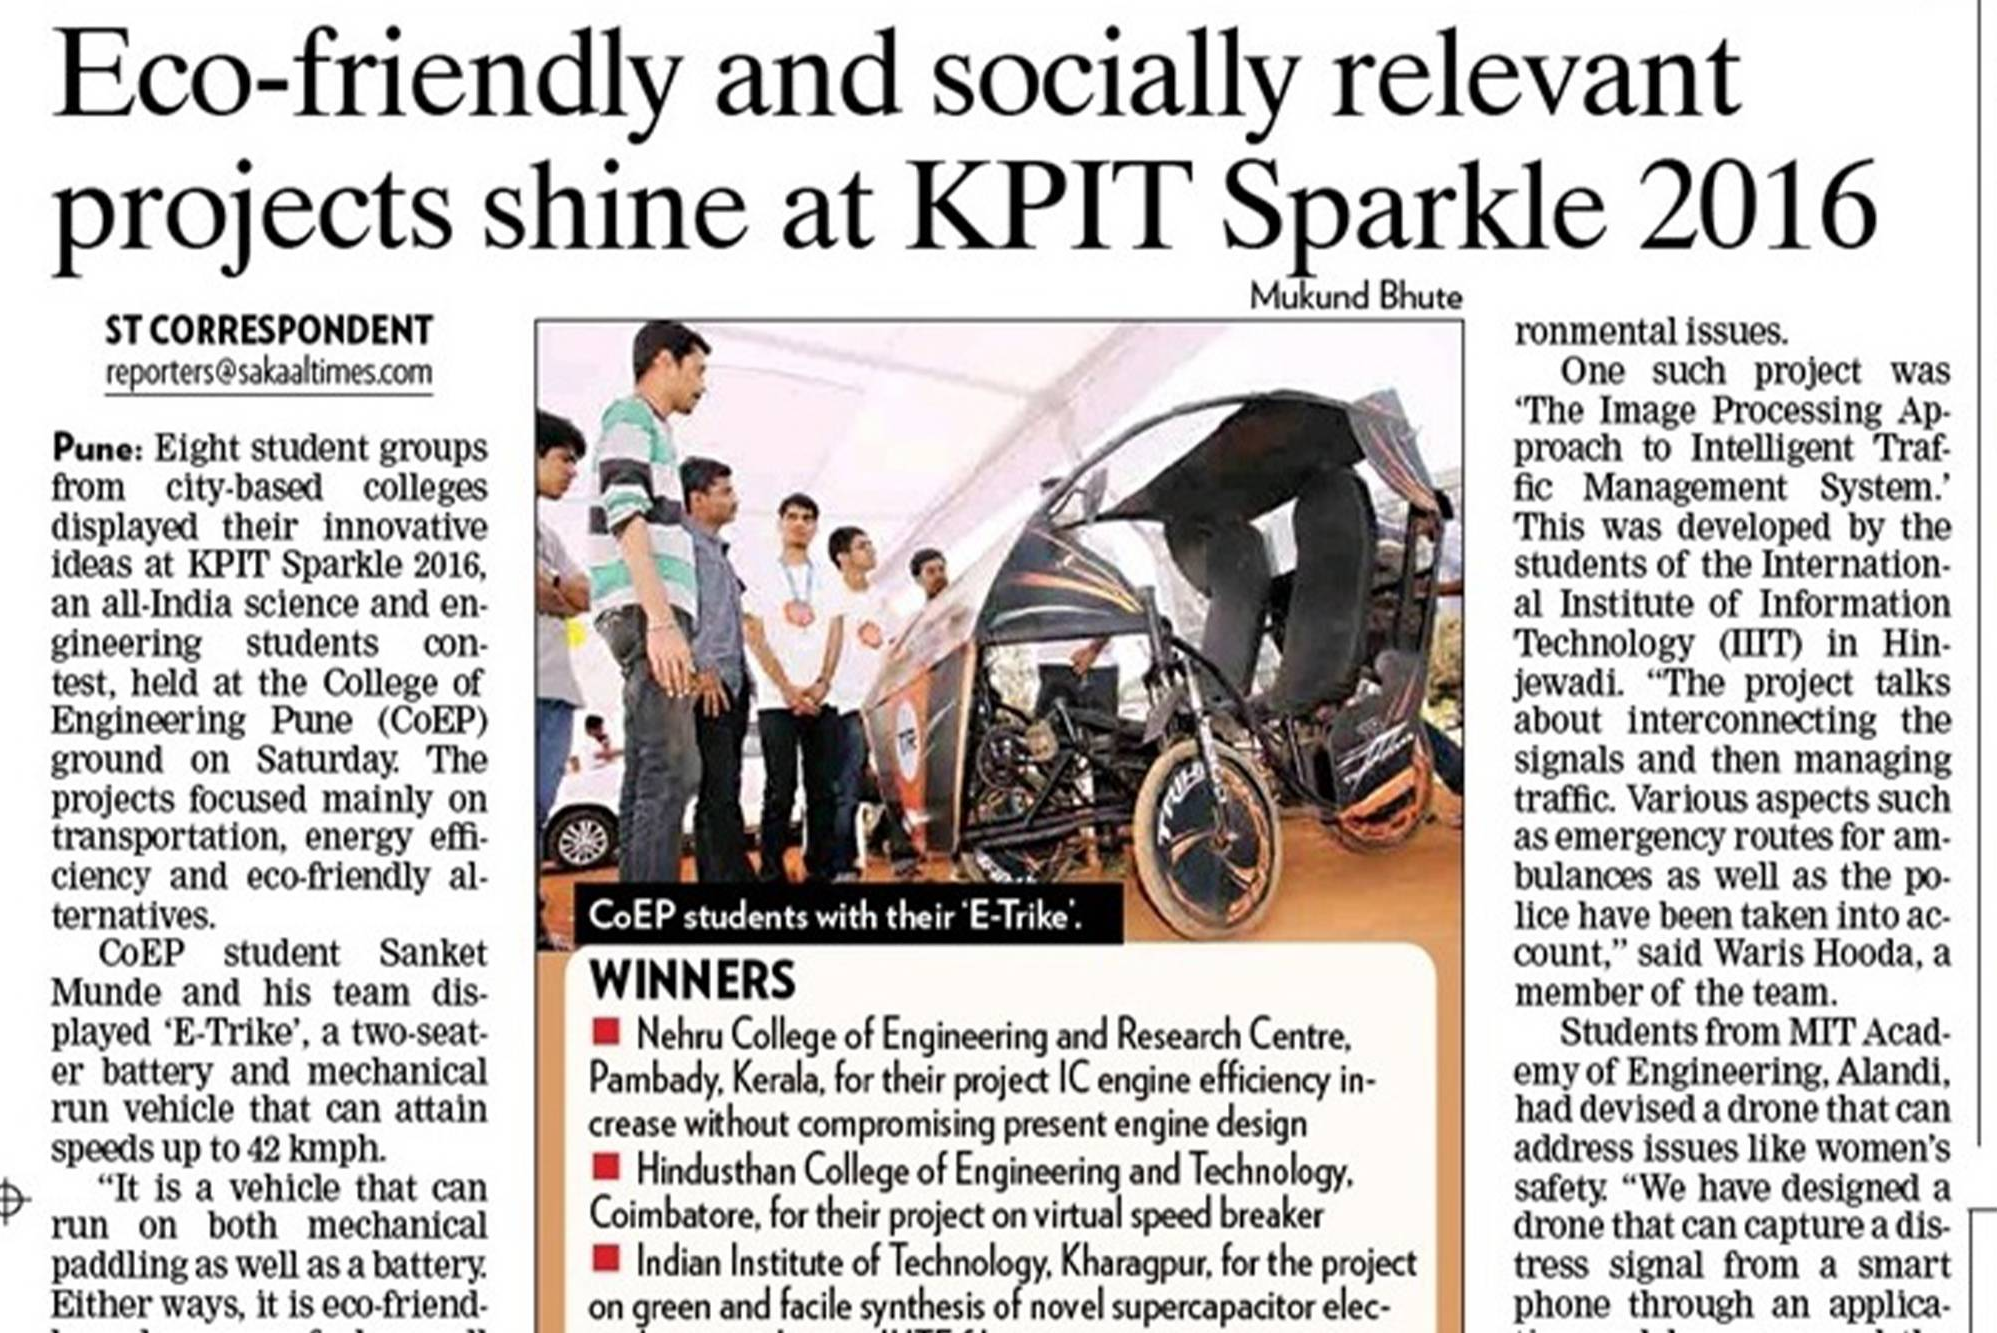 KPIT sparkle